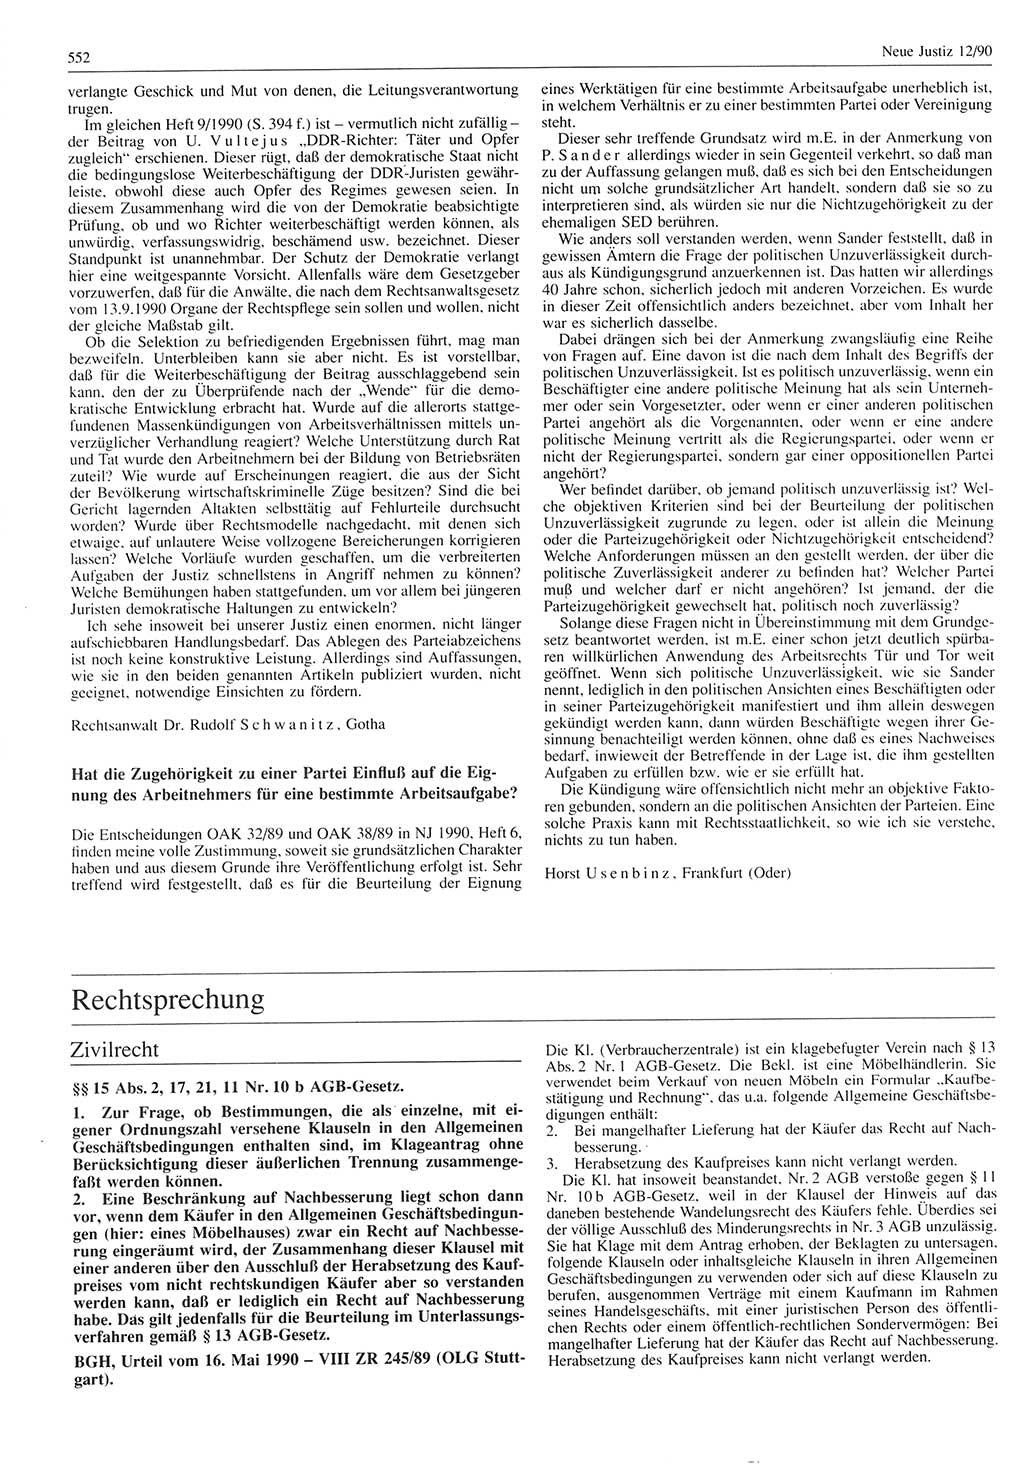 Neue Justiz (NJ), Zeitschrift für Rechtsetzung und Rechtsanwendung [Deutsche Demokratische Republik (DDR)], 44. Jahrgang 1990, Seite 552 (NJ DDR 1990, S. 552)